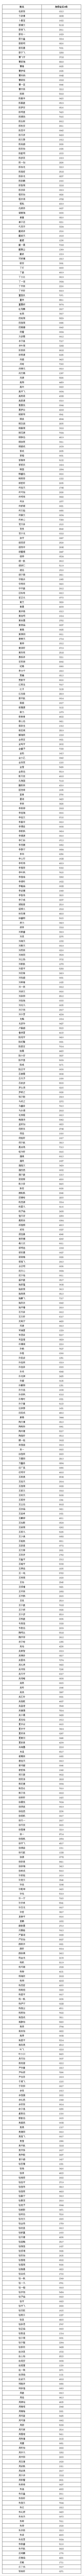 南方科技大学2018年综合评价初审名单公示（江苏省）